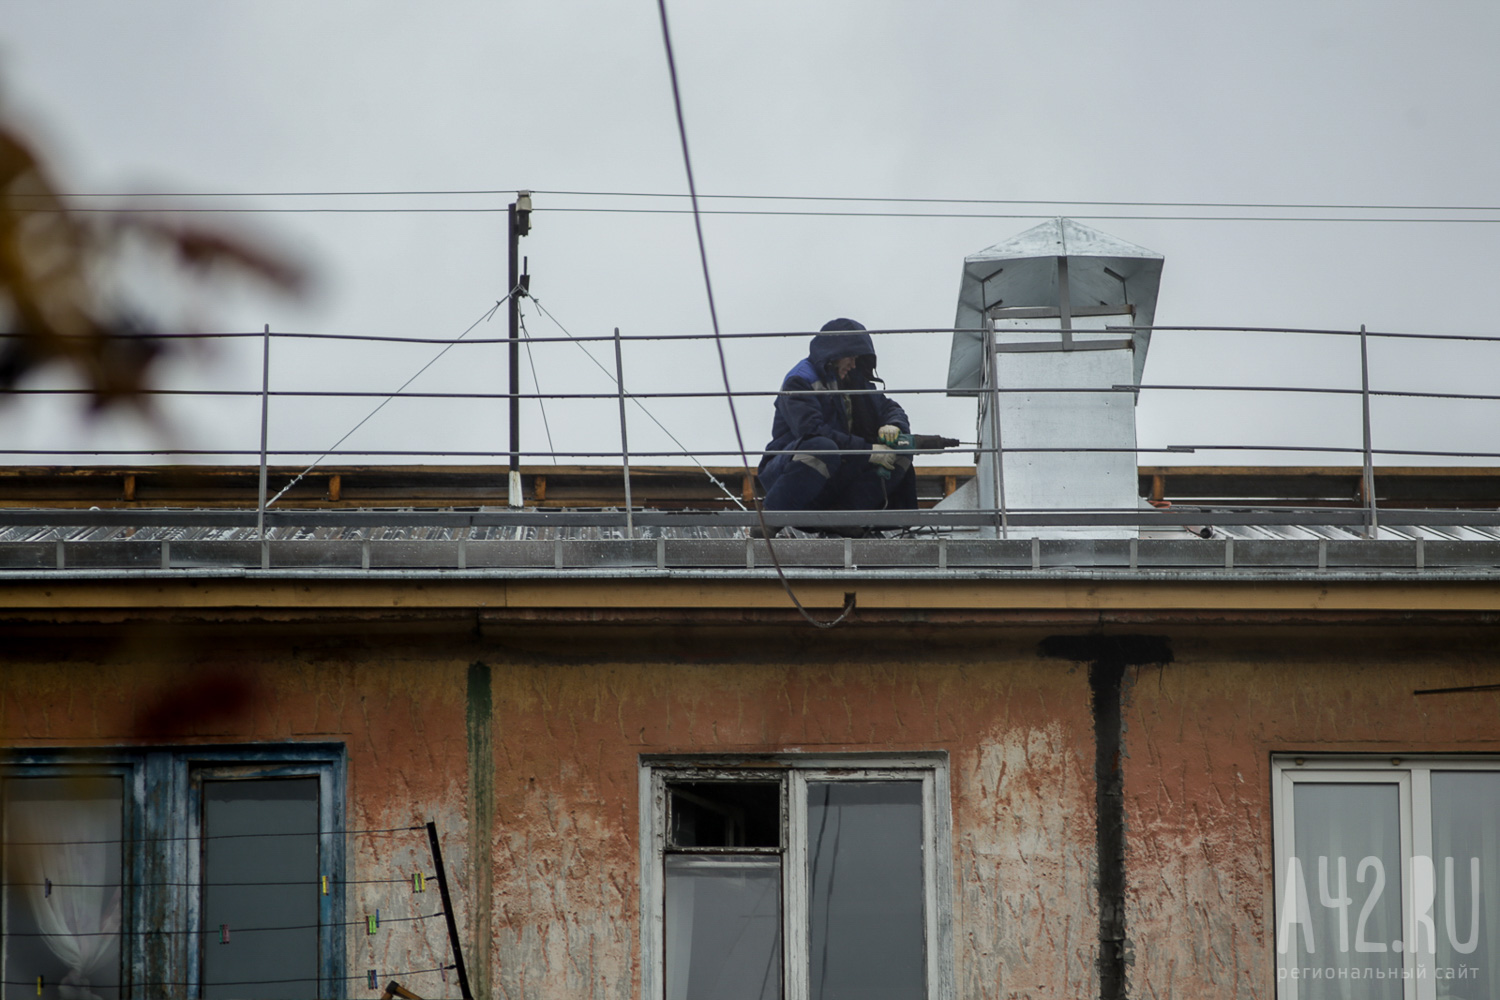 Глава Кузбасса поручил мэру Междуреченска доложить об инциденте с крышей дома, пострадавшей от ветра во время ремонта